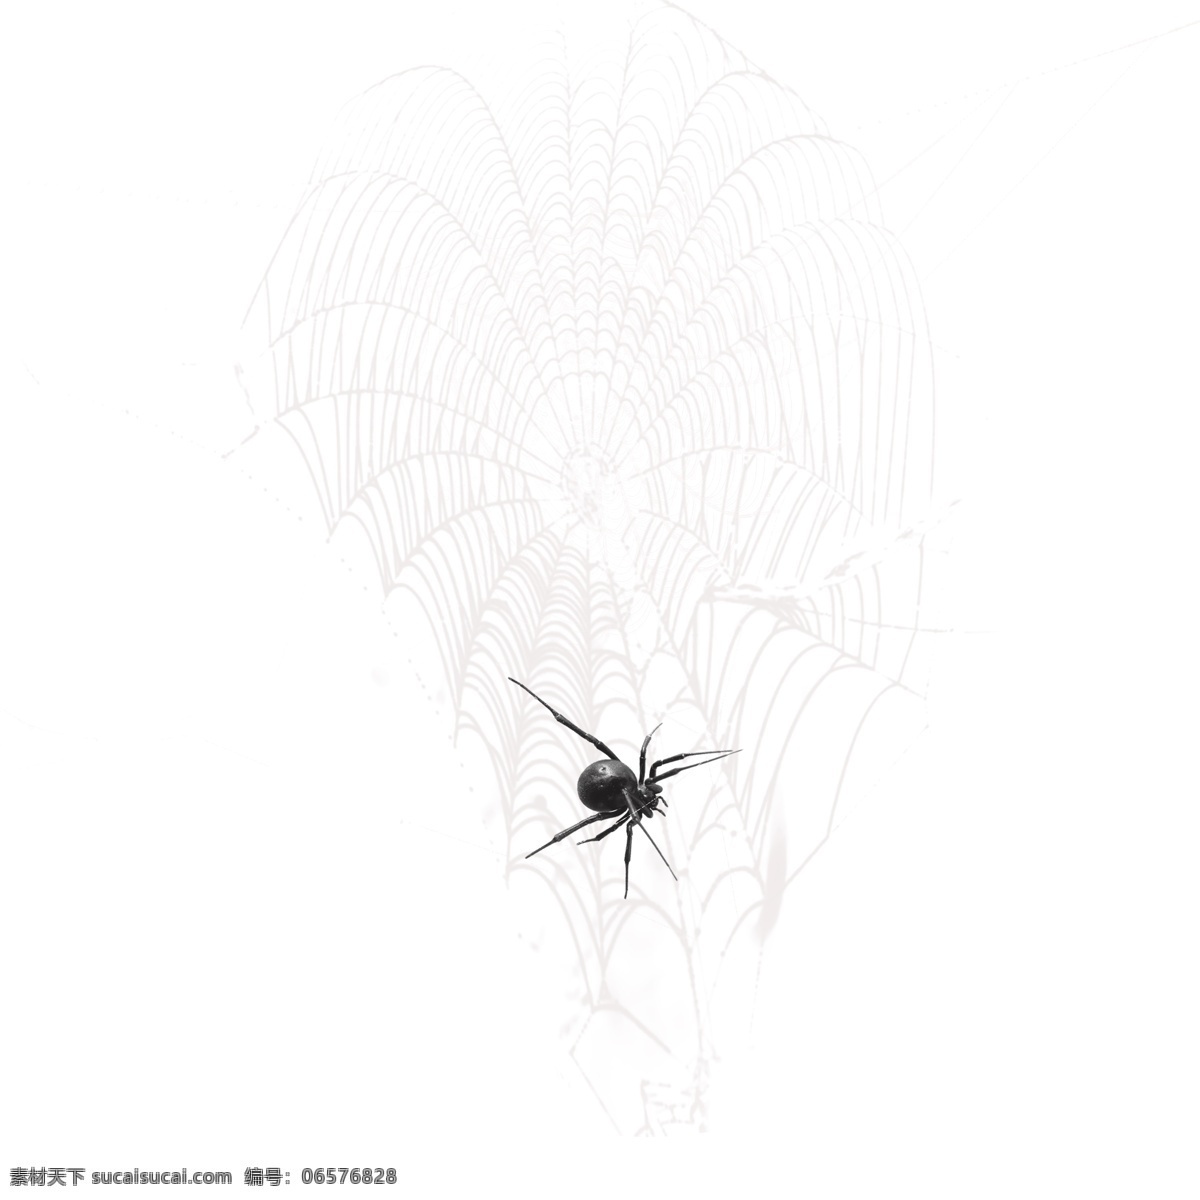 蛛 线 丝网 状 效果 创意设计 蜘蛛网 蛛线丝 露水网 毒蜘蛛特效 网状物 白色 织网 吐丝 网状效果 织网的蜘蛛